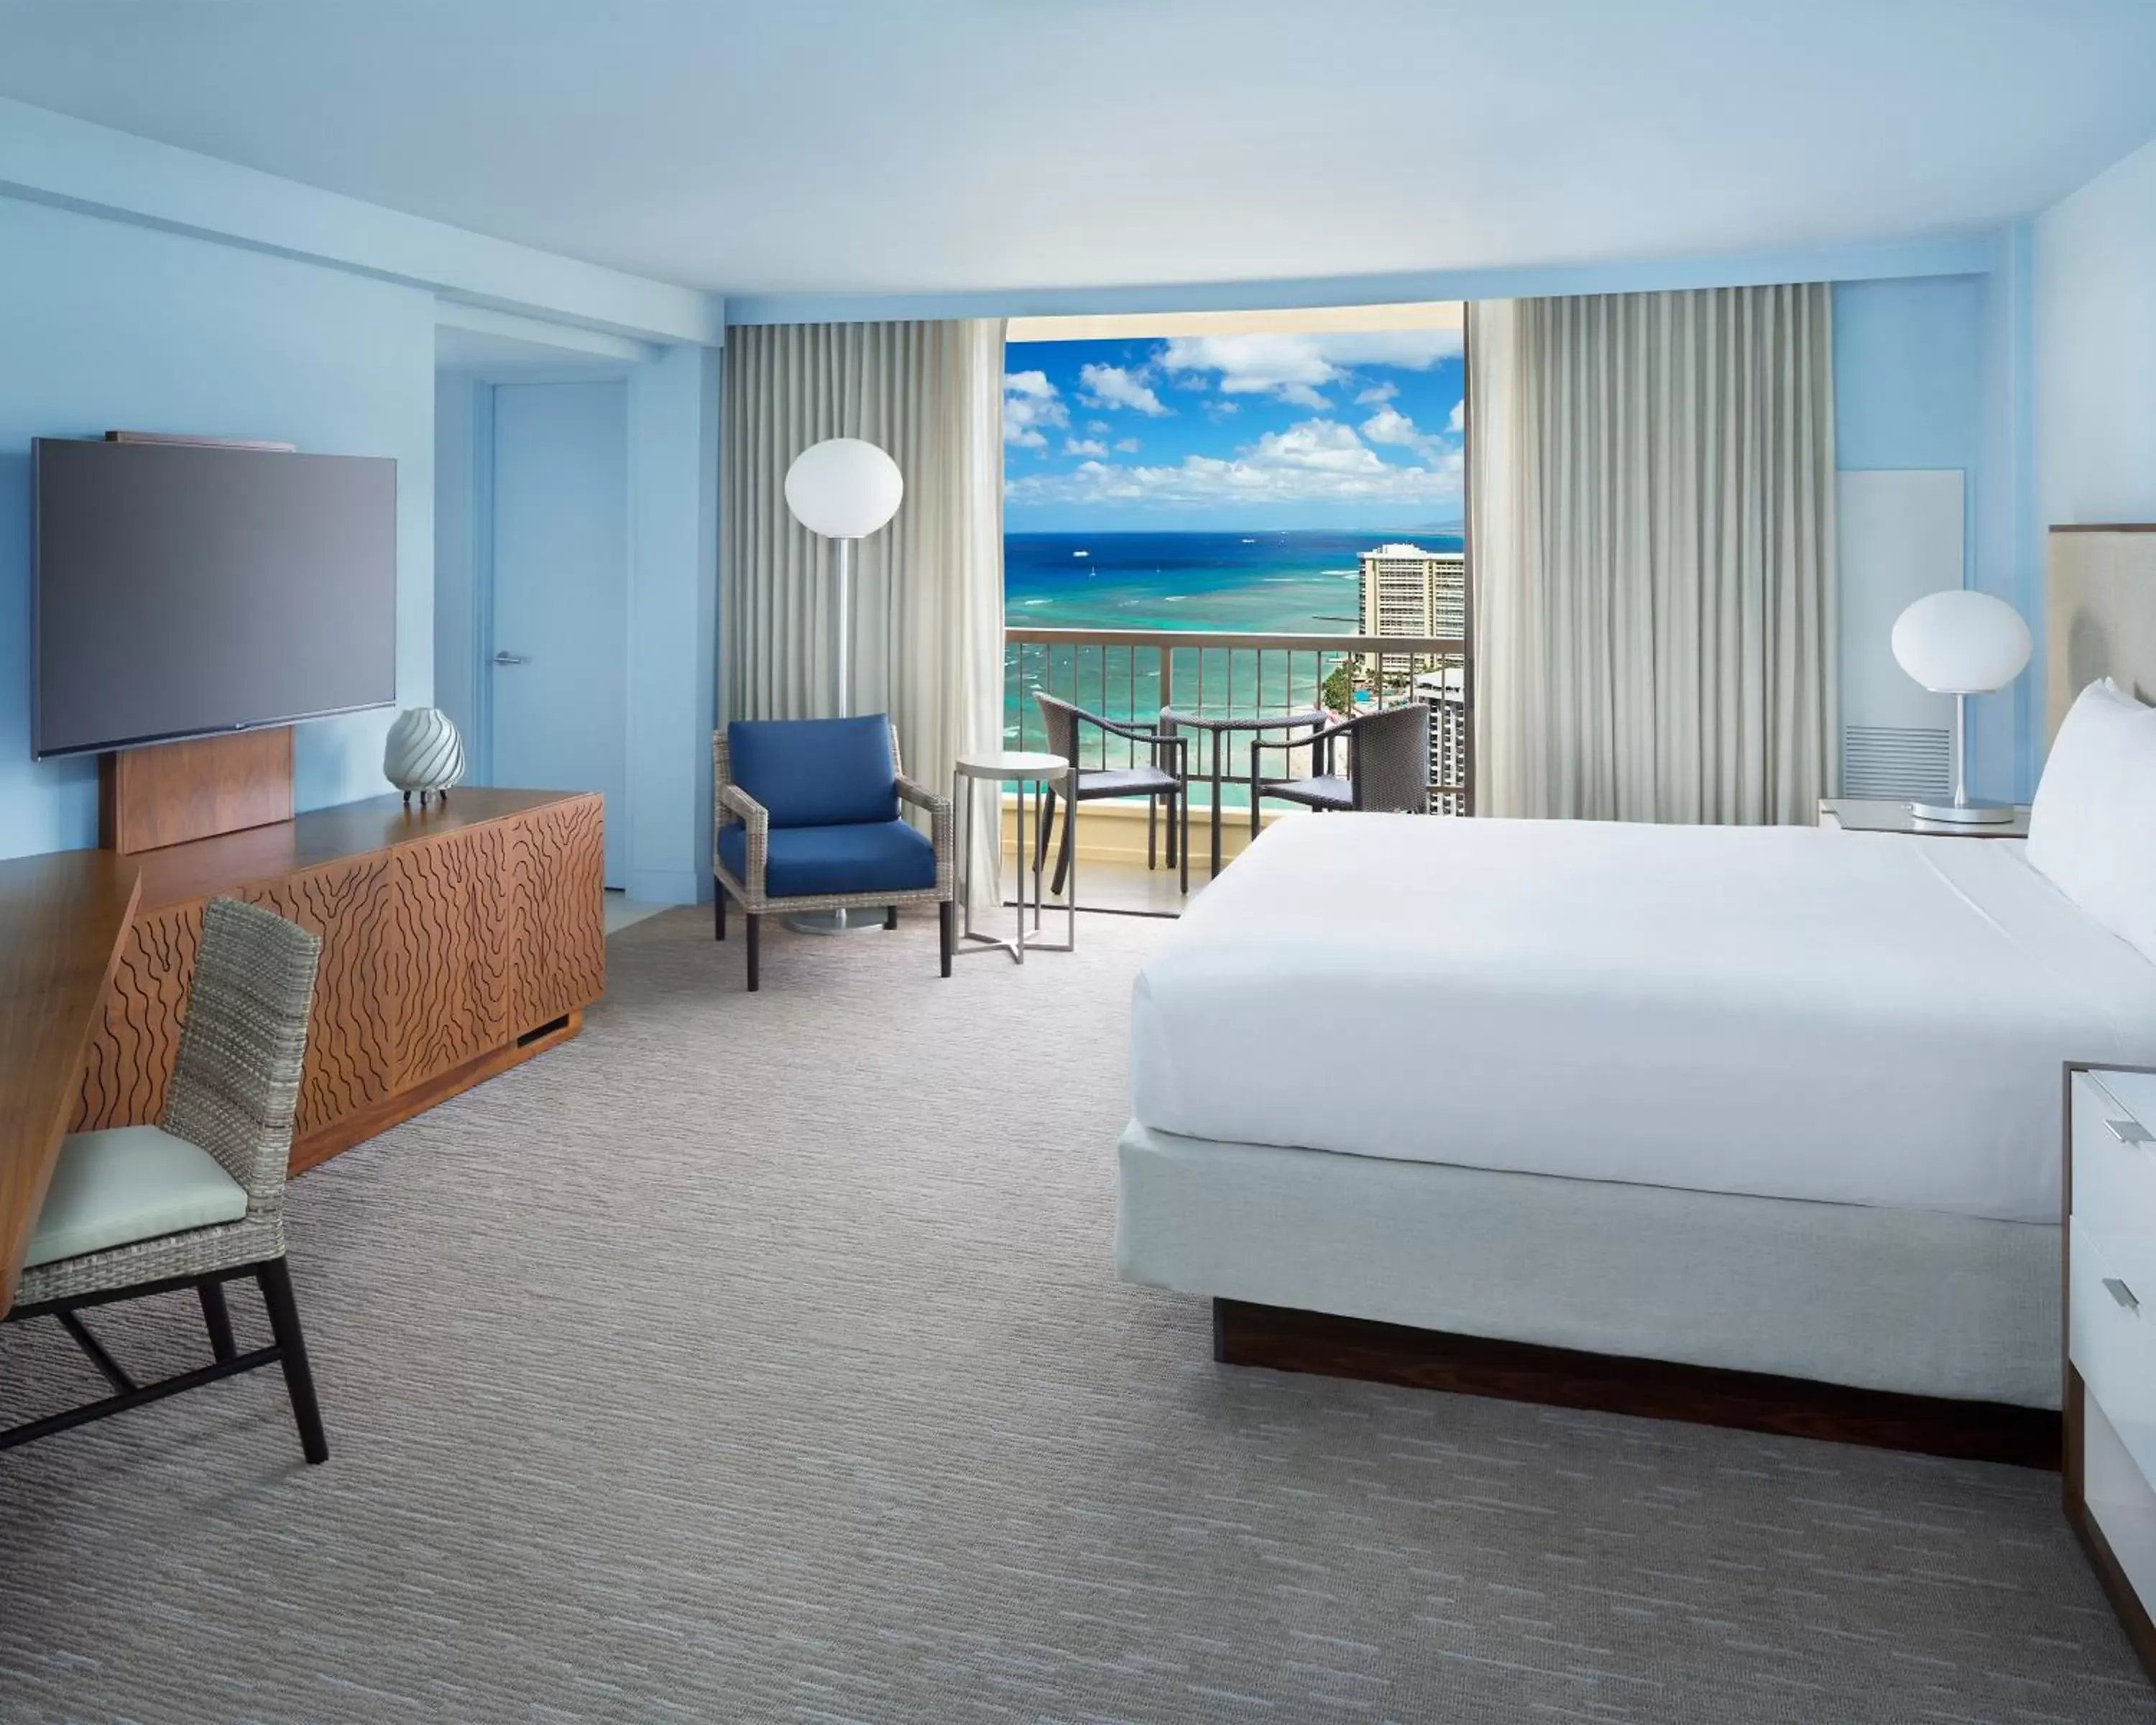 King Room with Ocean View - High floor in Hyatt Regency Waikiki Beach Resort & Spa